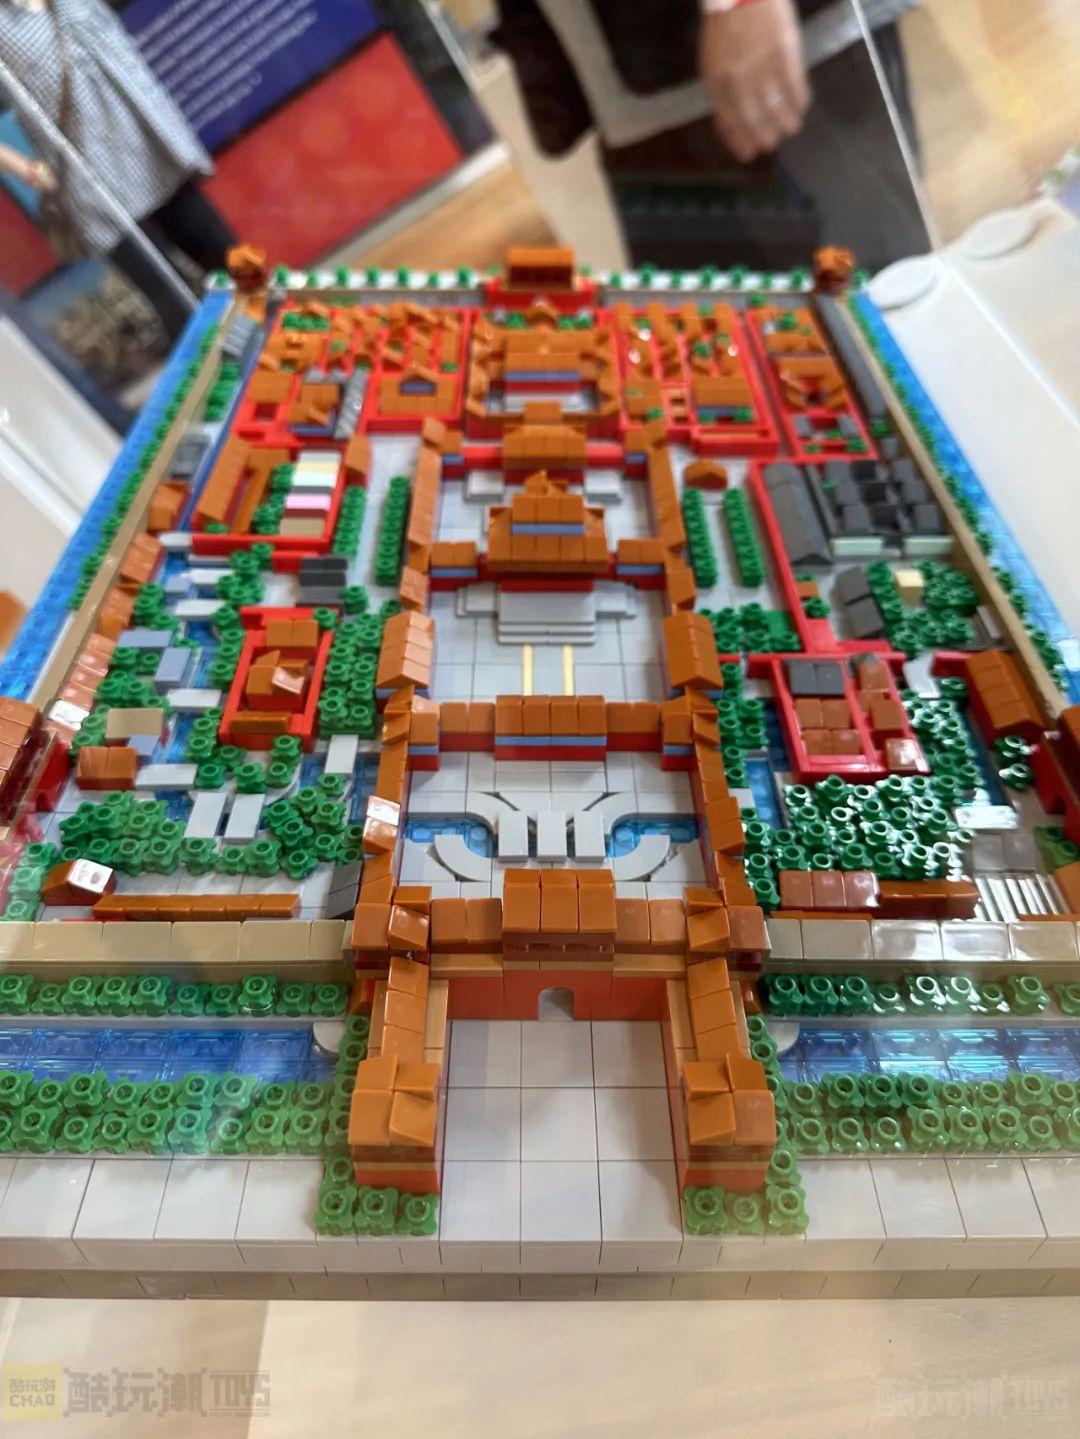 美国国家博物馆Brick City积木展——砖块艺术家沃伦·埃尔斯莫尔个人作品展掠影 -121